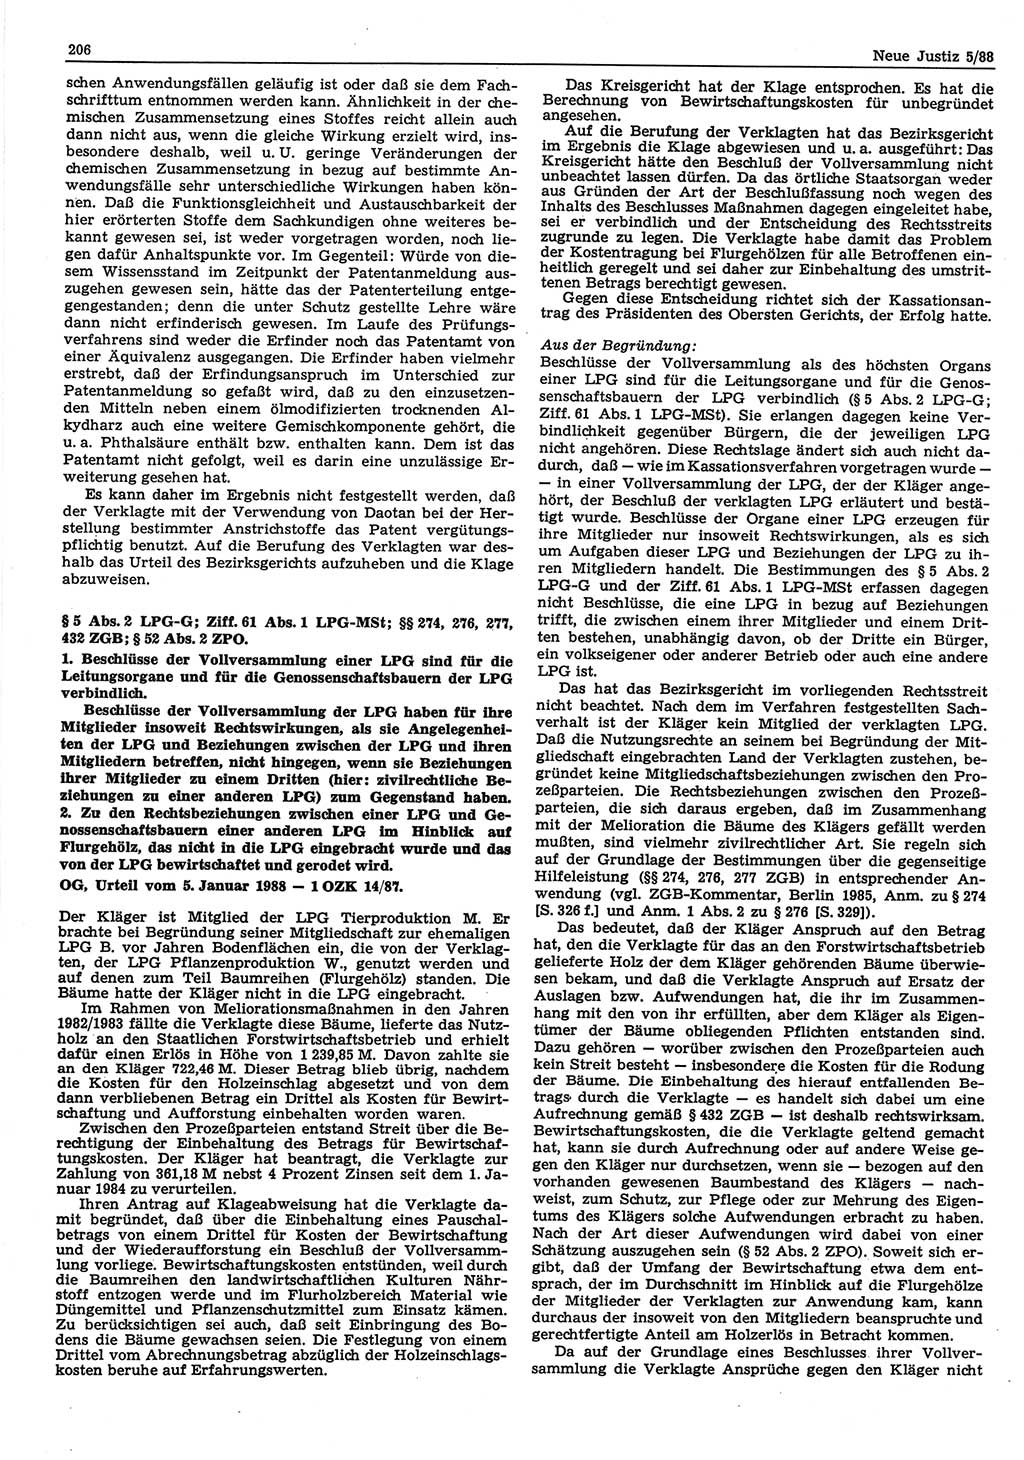 Neue Justiz (NJ), Zeitschrift für sozialistisches Recht und Gesetzlichkeit [Deutsche Demokratische Republik (DDR)], 42. Jahrgang 1988, Seite 206 (NJ DDR 1988, S. 206)